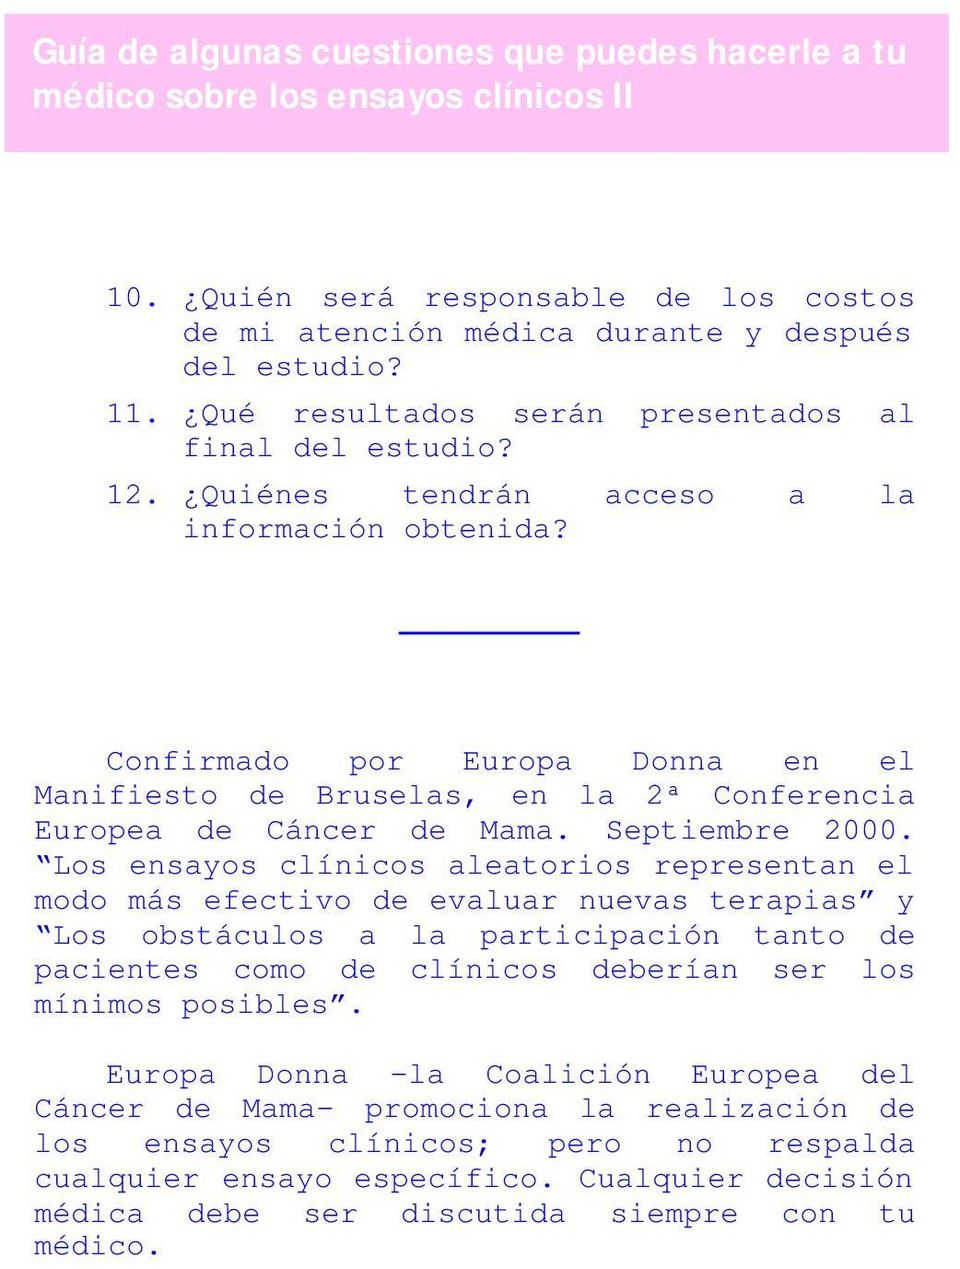 Confirmado por Europa Donna en el Manifiesto de Bruselas, en la 2ª Conferencia Europea de Cáncer de Mama. Septiembre 2000.